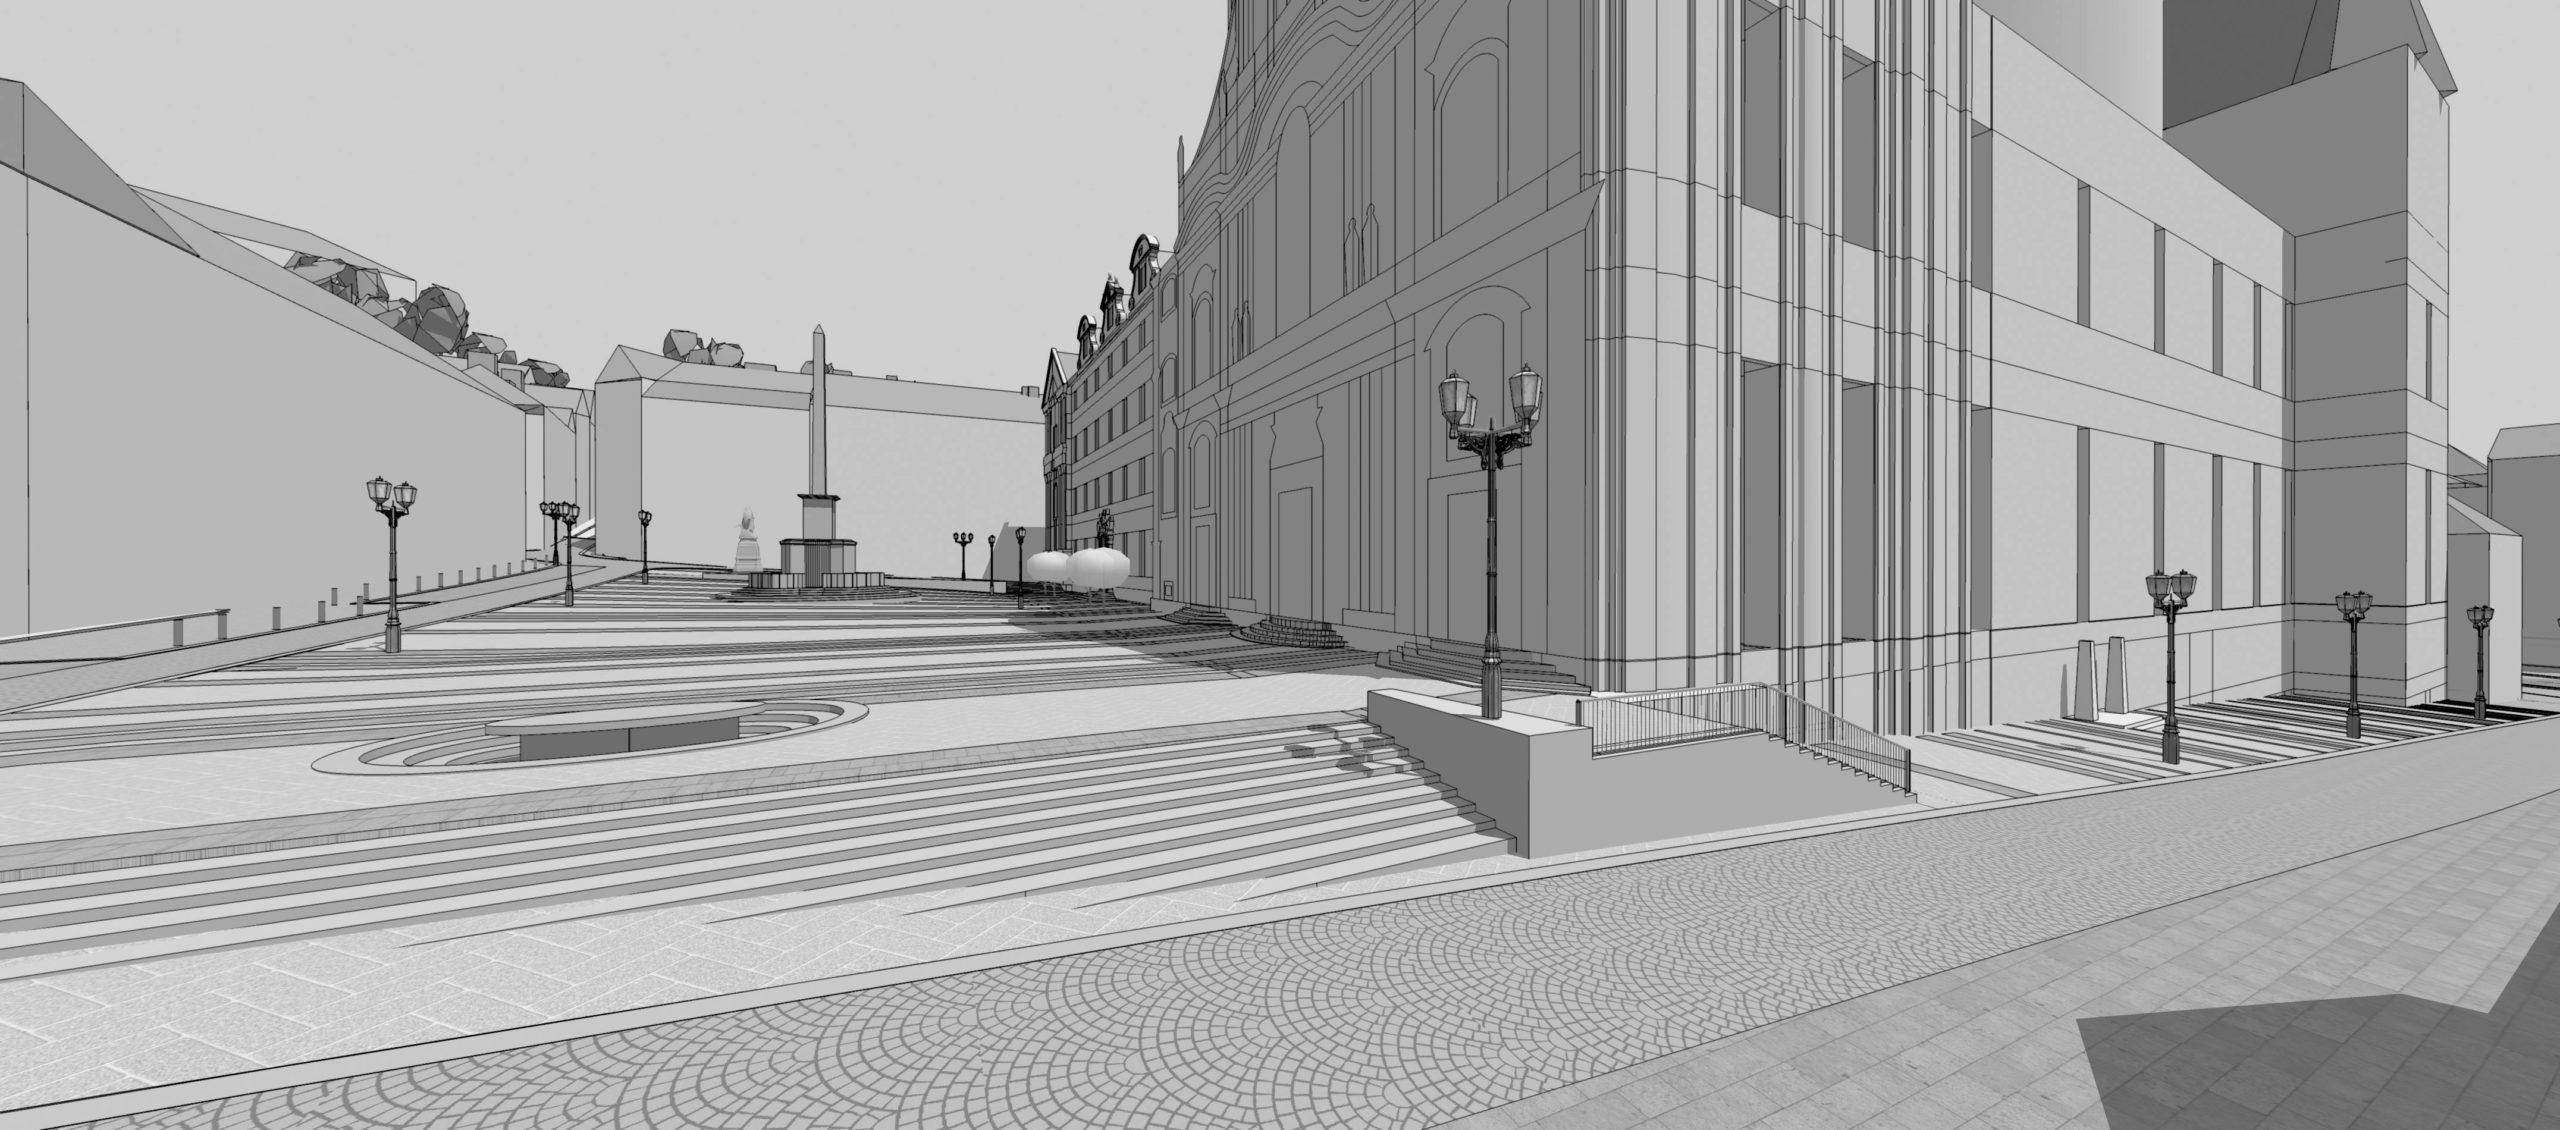 Soutěžní návrh revitalizace dolní a horní části Malostranského náměstí, Praha 1